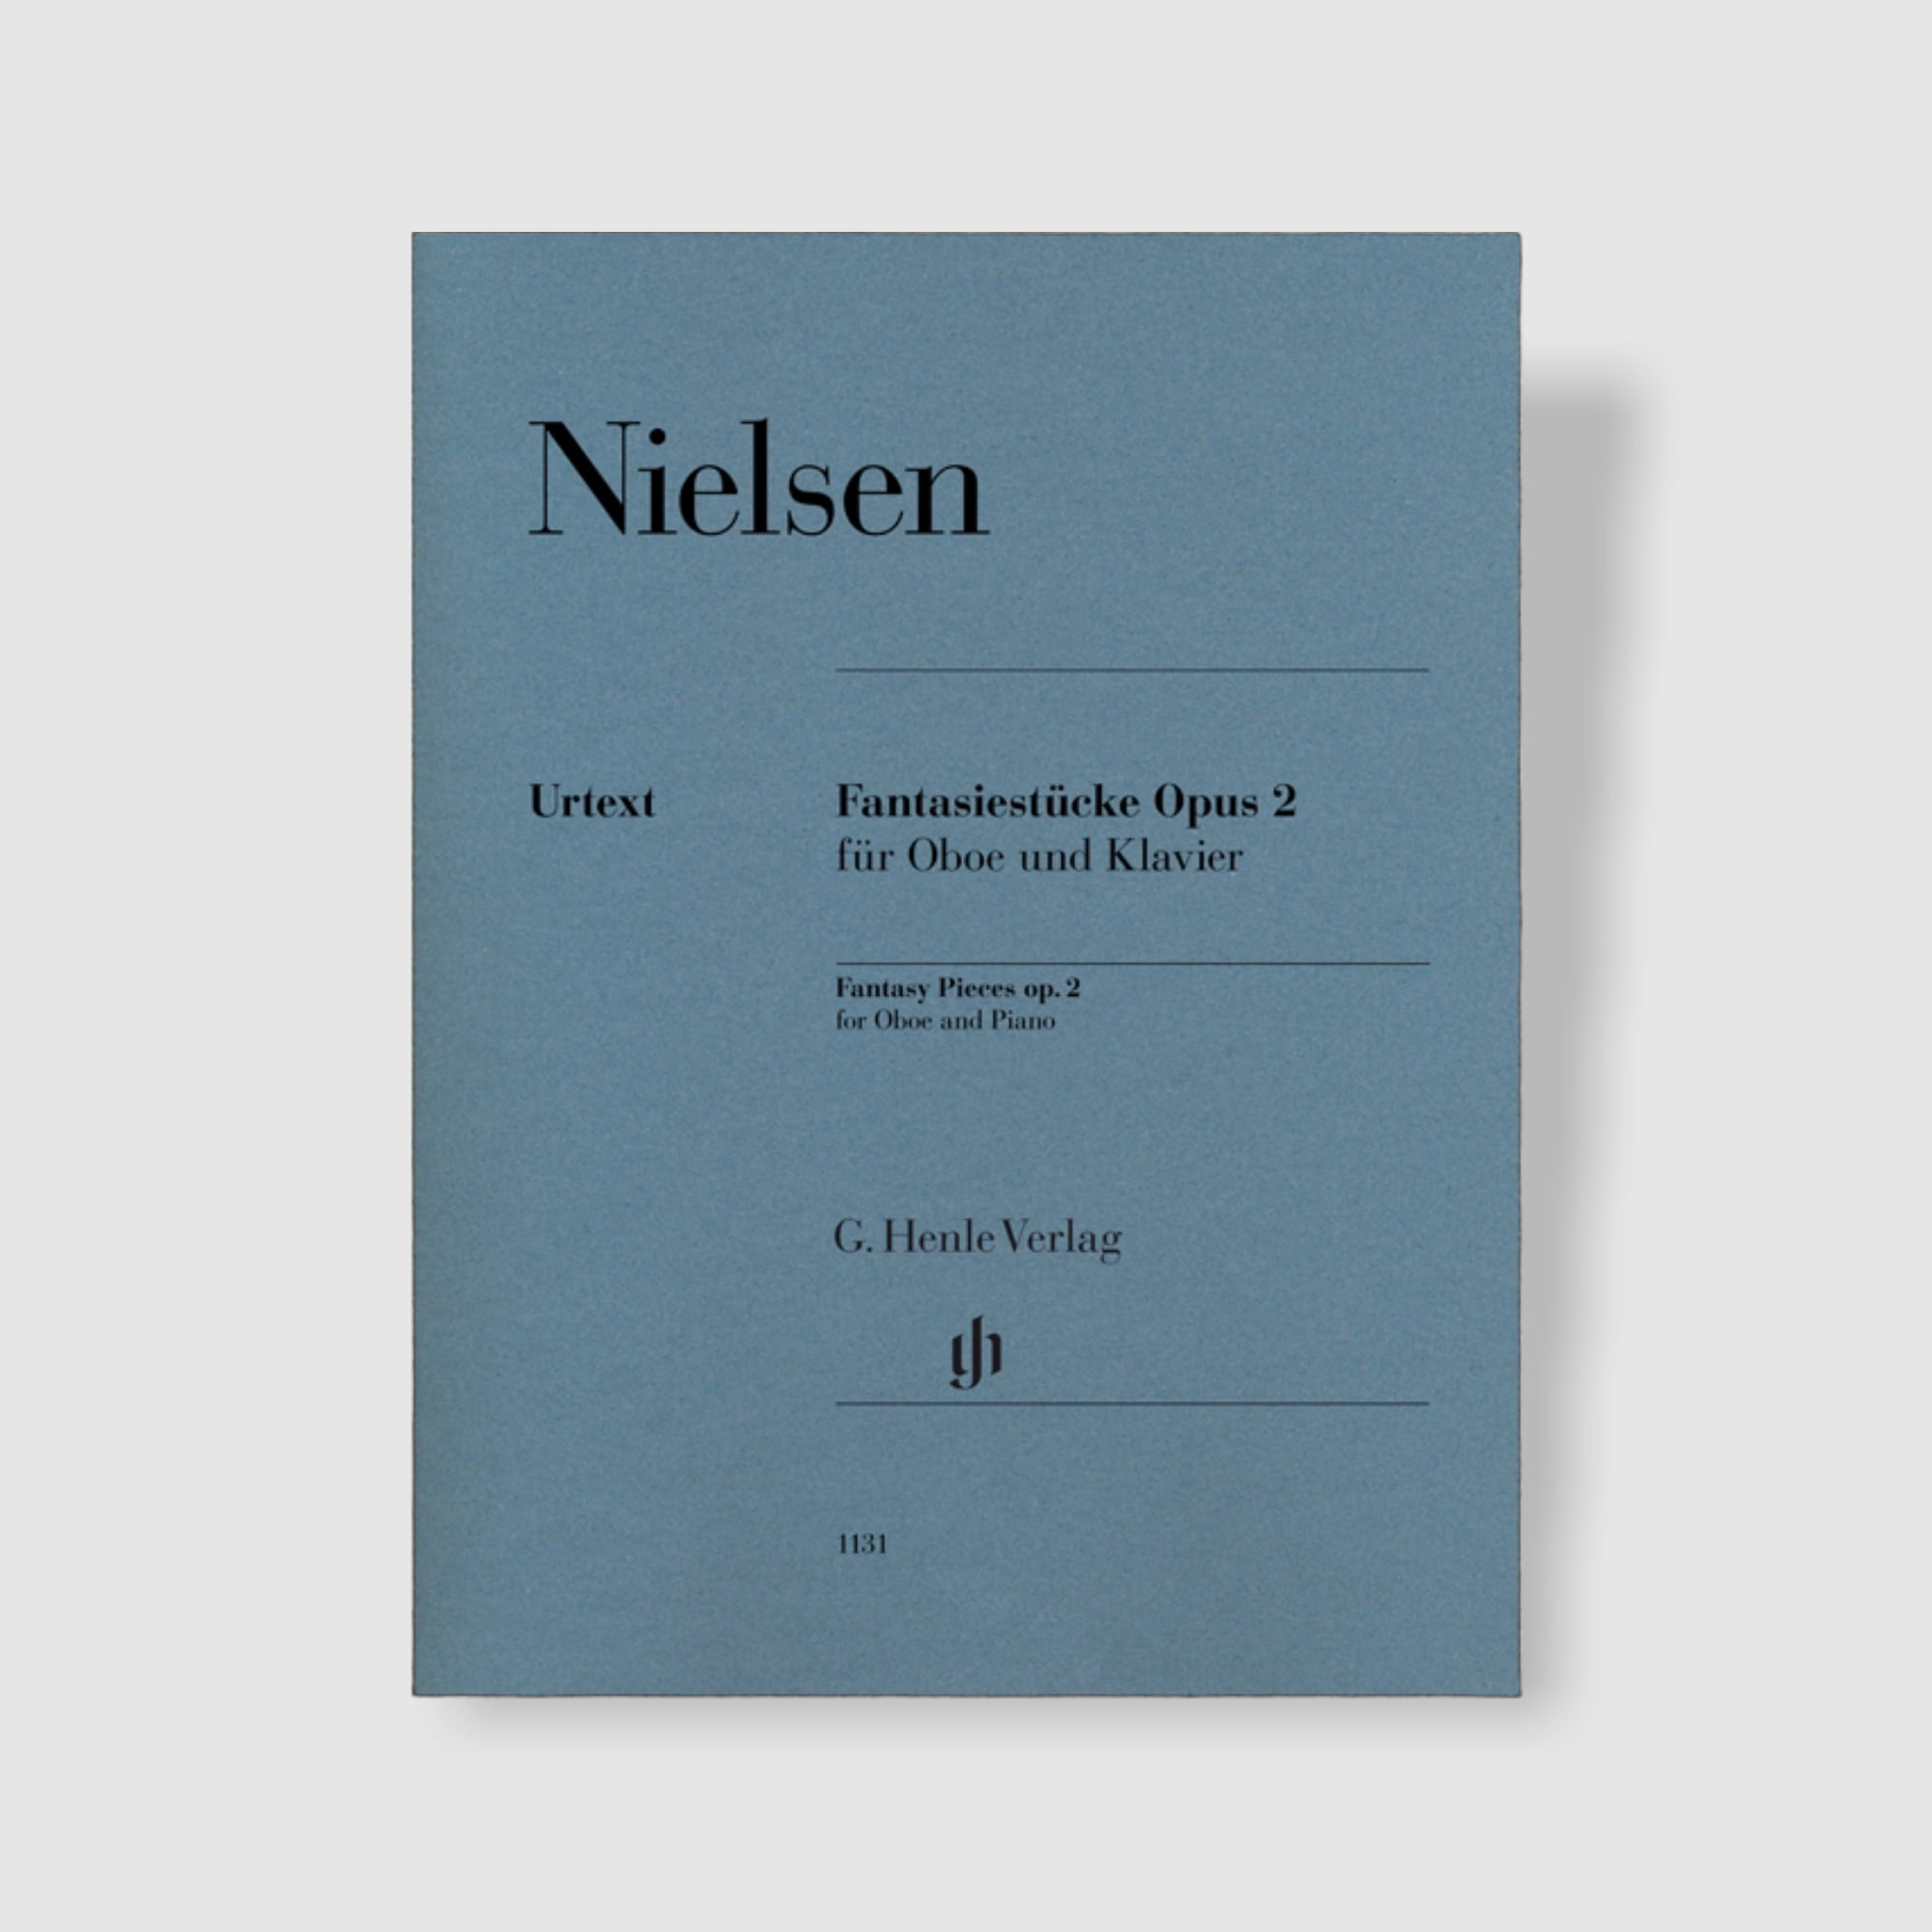 닐센 오보에와 피아노를 위한 환상 소품곡 Op. 2